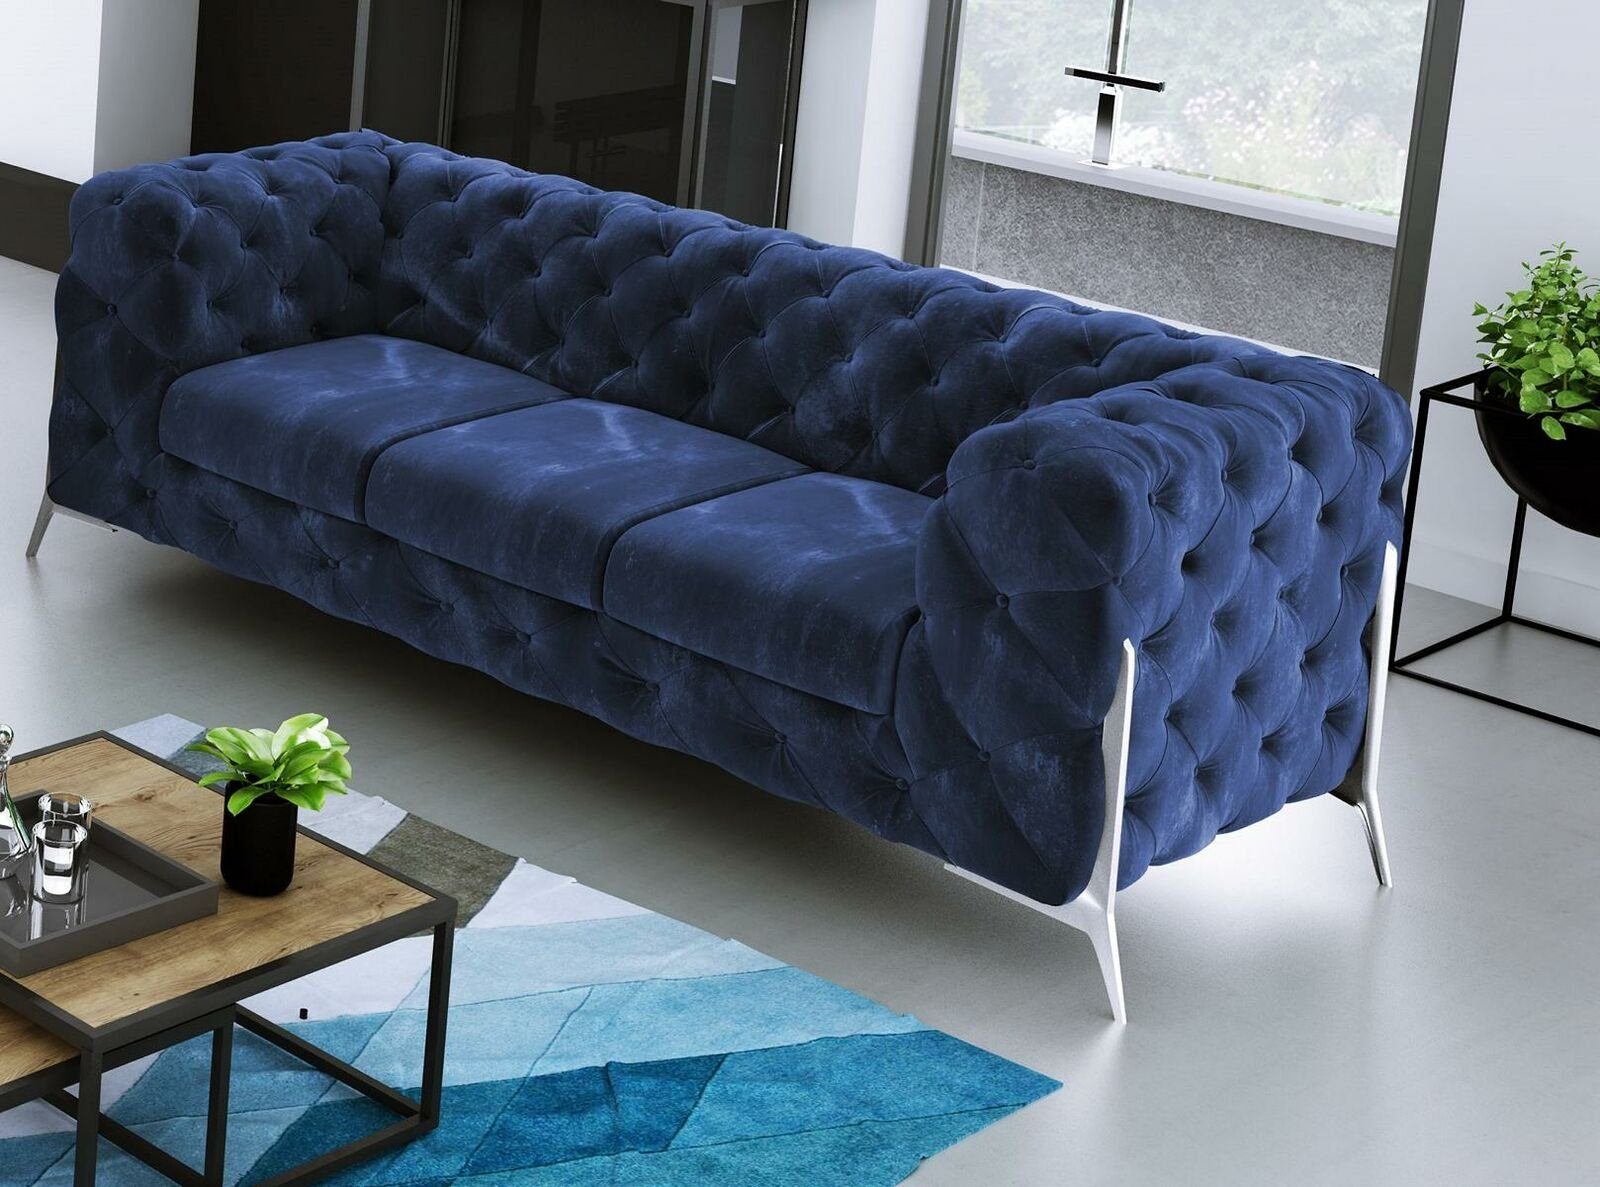 JVmoebel Sofa Moderner Brauner Chesterfield Couch Blau Europe in Luxus Dreisitzer Polster Made Neu